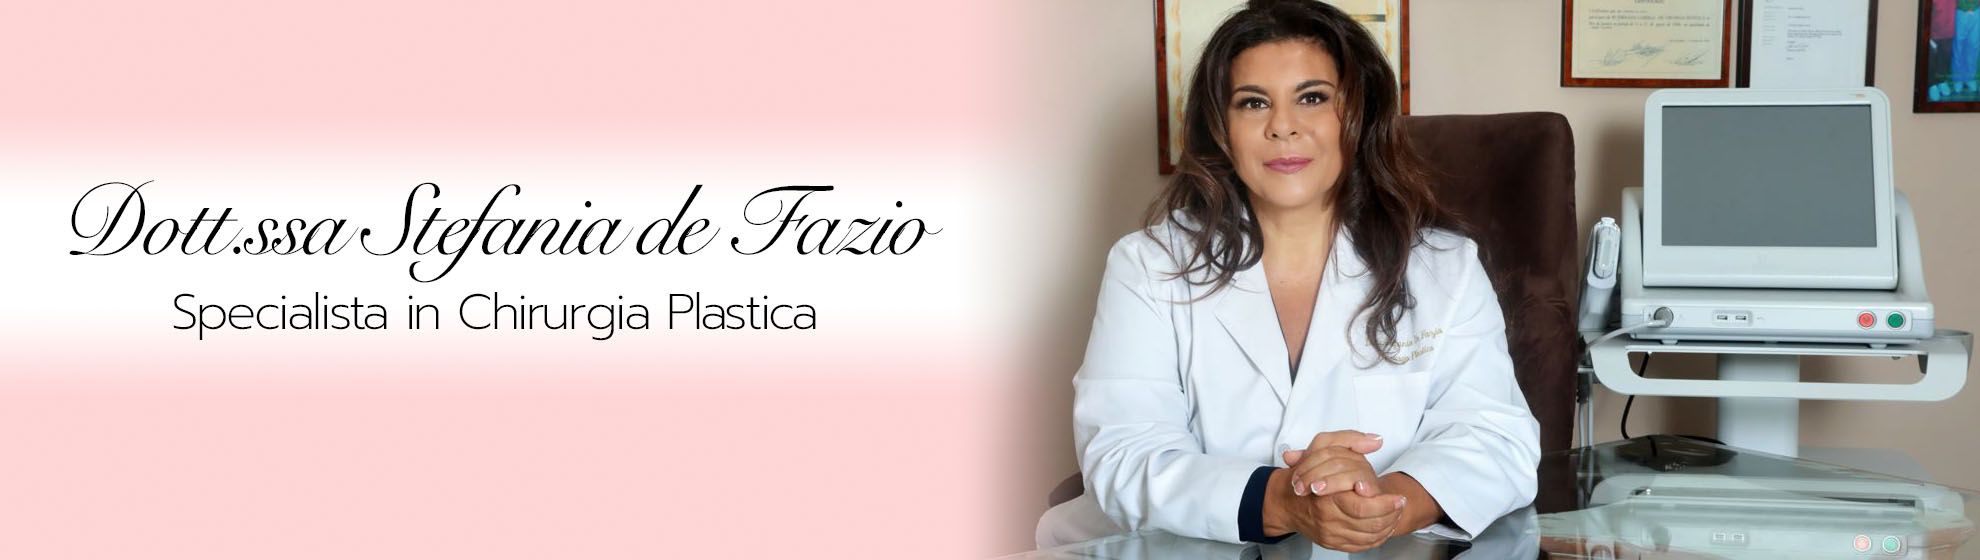 Dott.ssa Stefania de Fazio, Specialista in Chirurgia Plastica